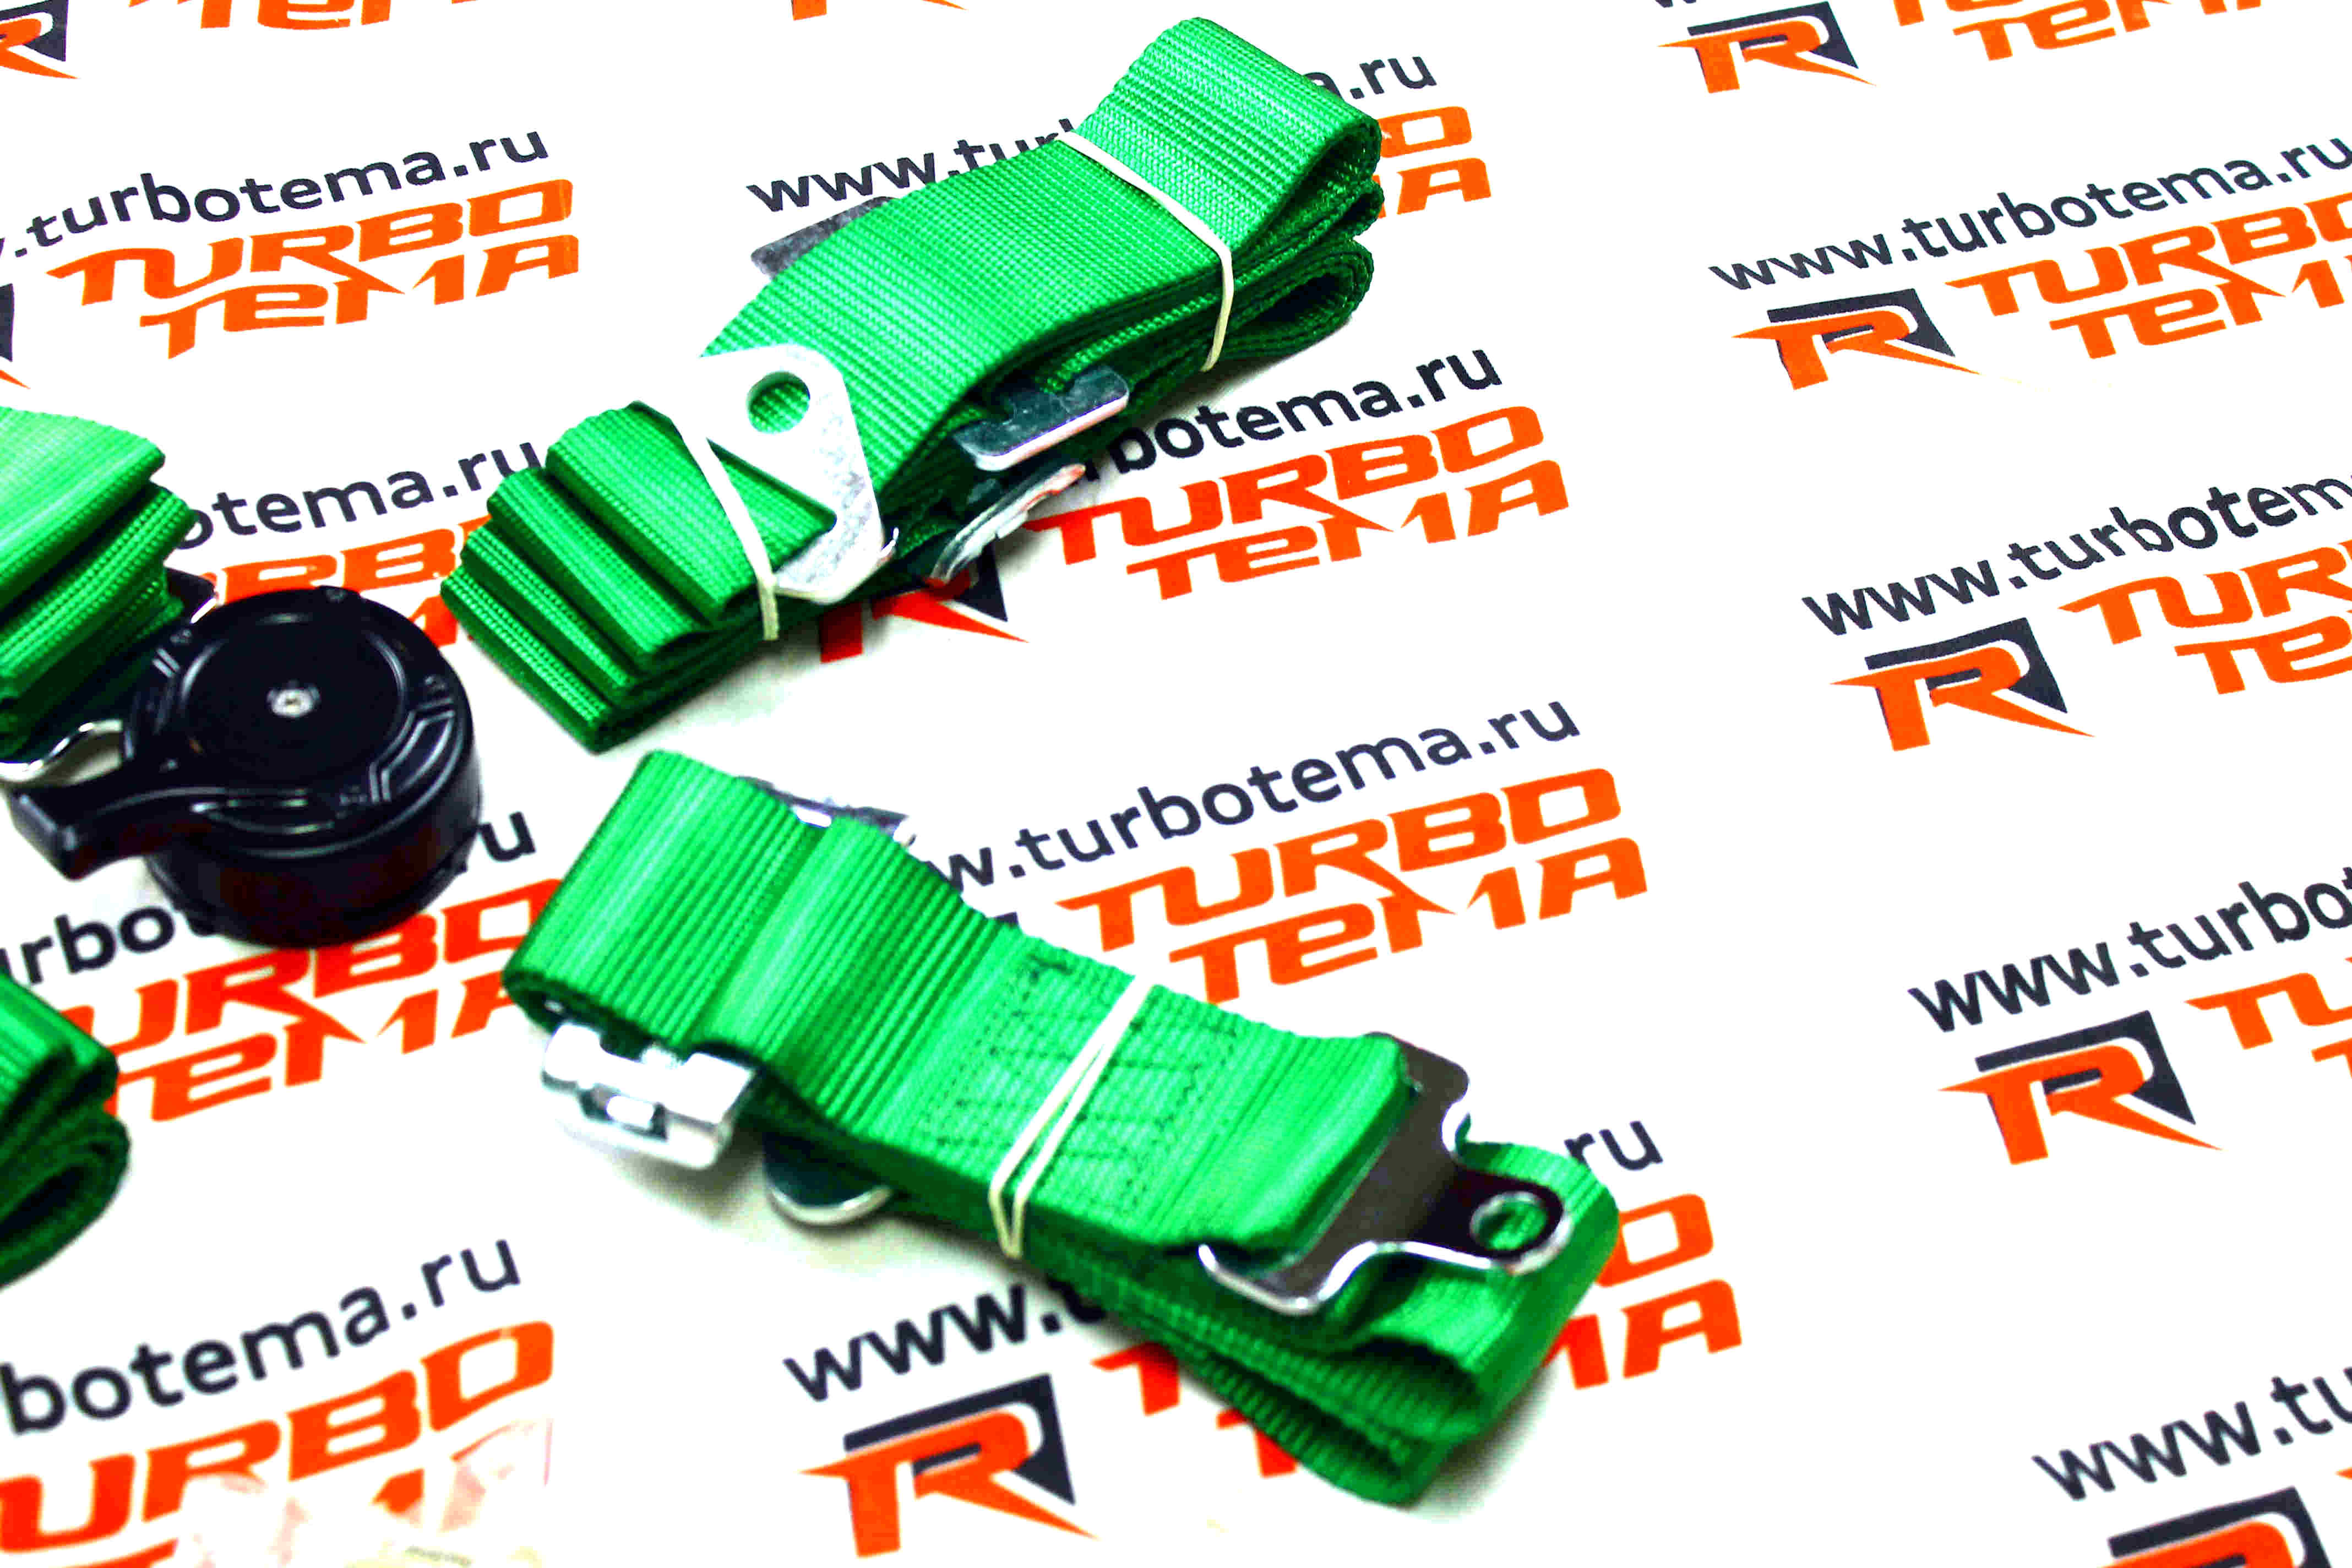 Ремни безопасности "TURBOTEMA" 4-х точечные, 2" ширина, быстросъемные (зеленые) JBR4001-4